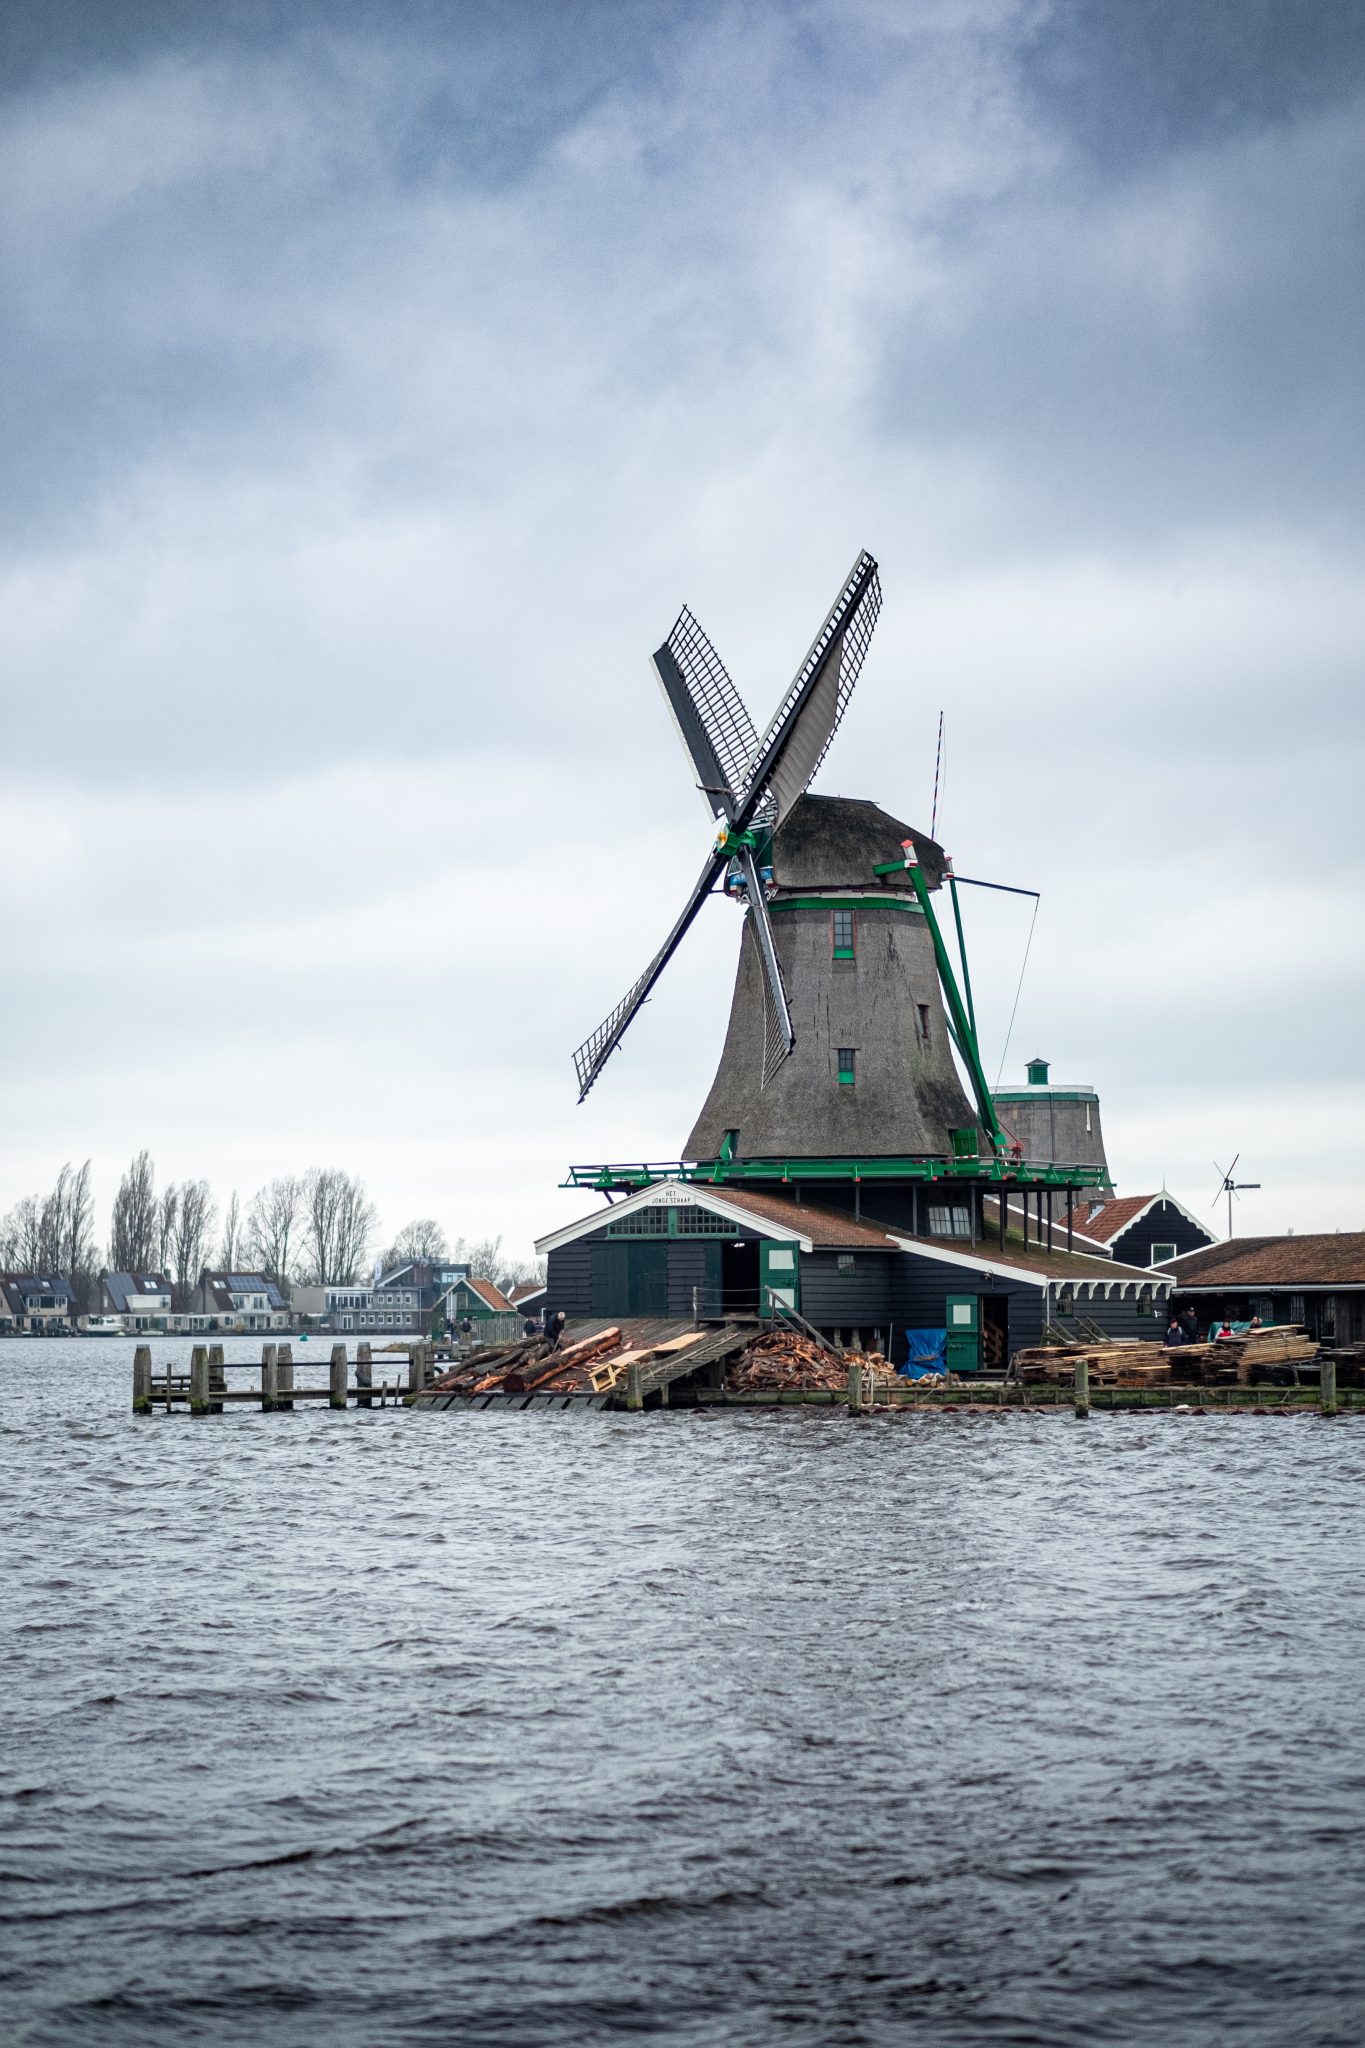 Windmill at Zaanse Schans, The Netherlands